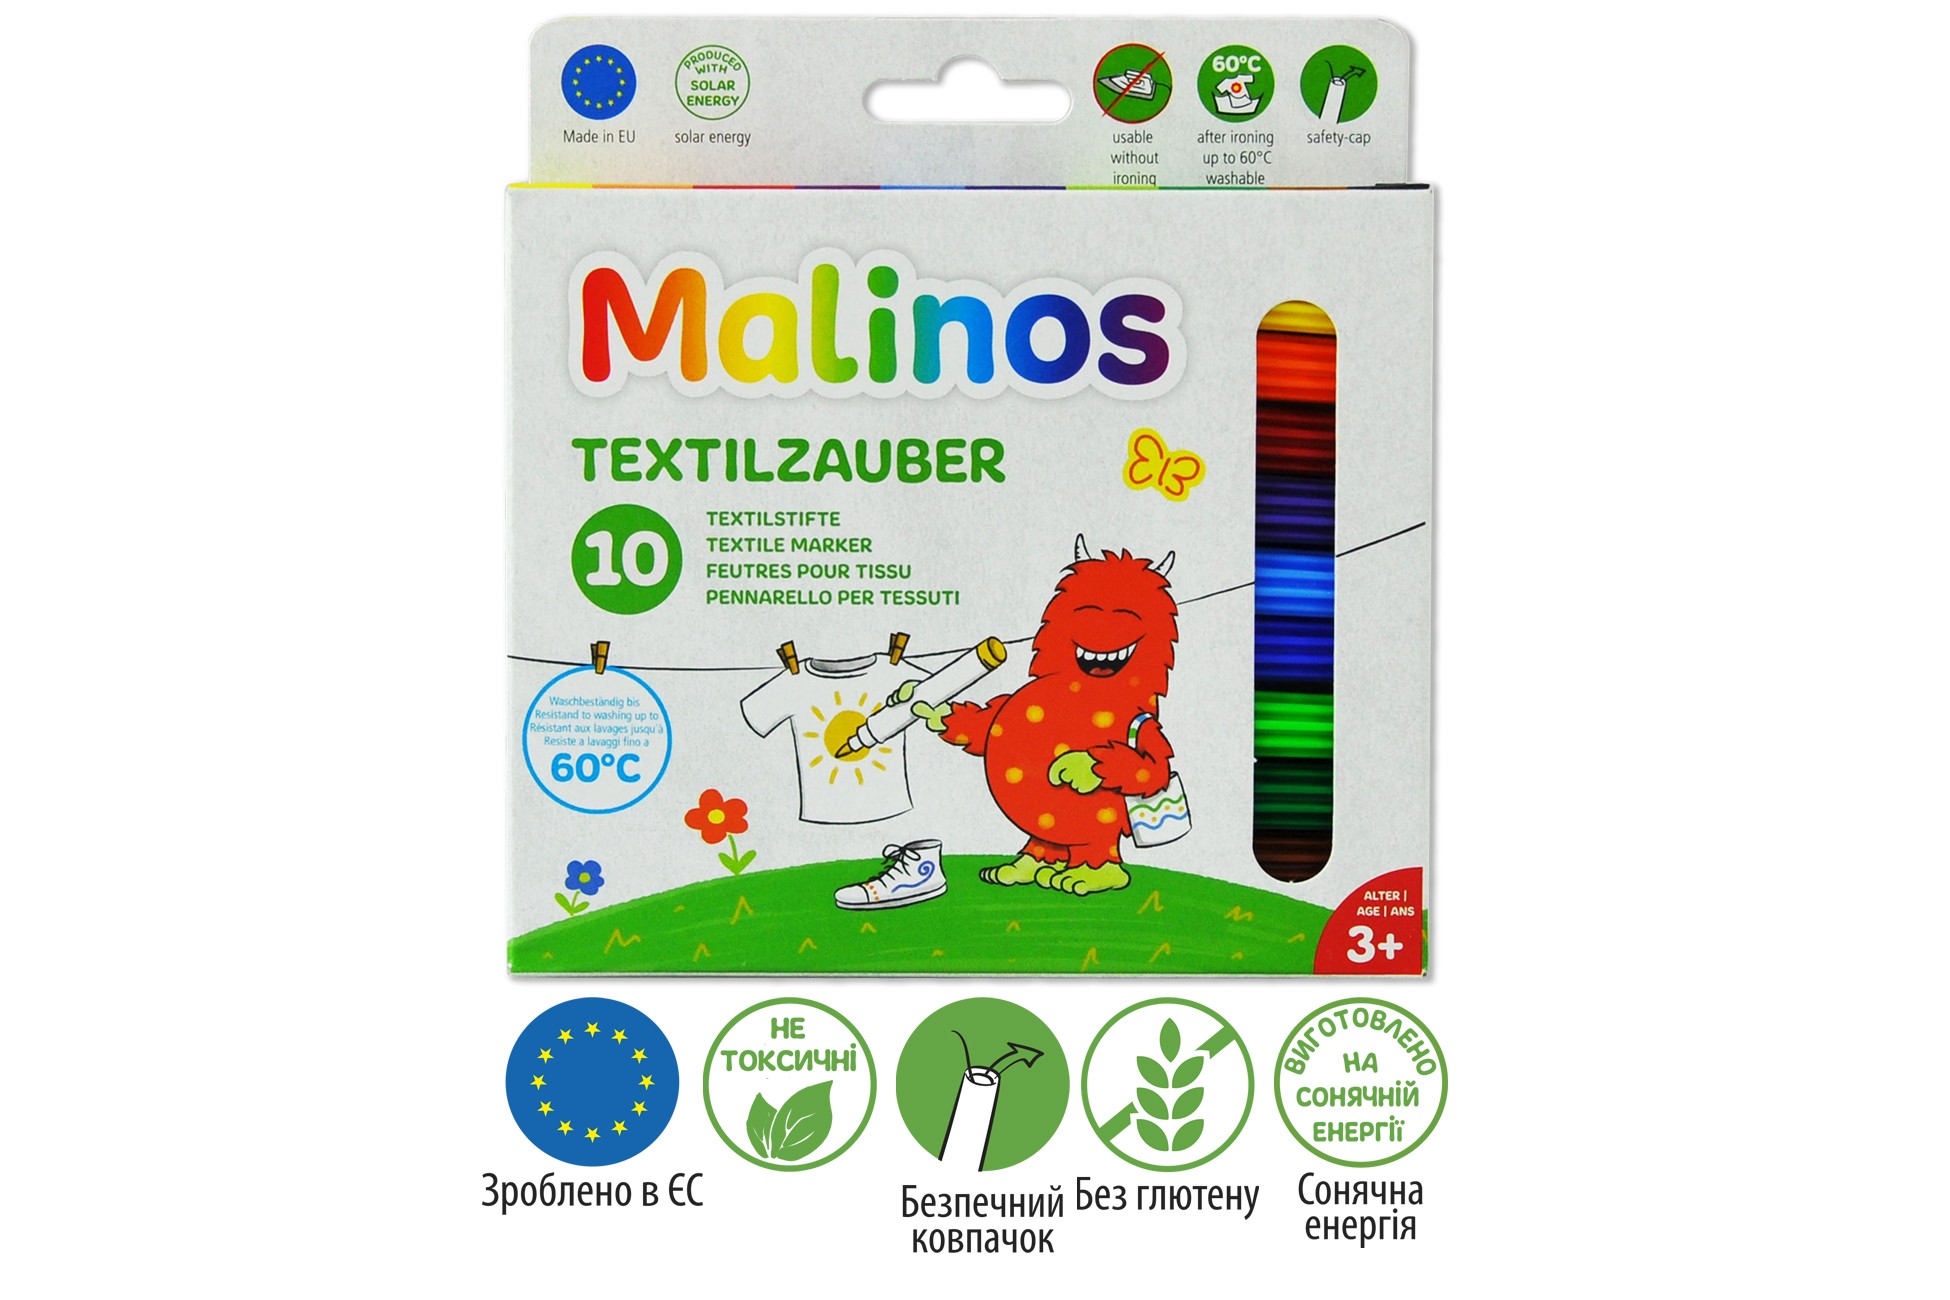 Фломастеры для ткани Malinos Textil текстильные 10 шт MA-300010